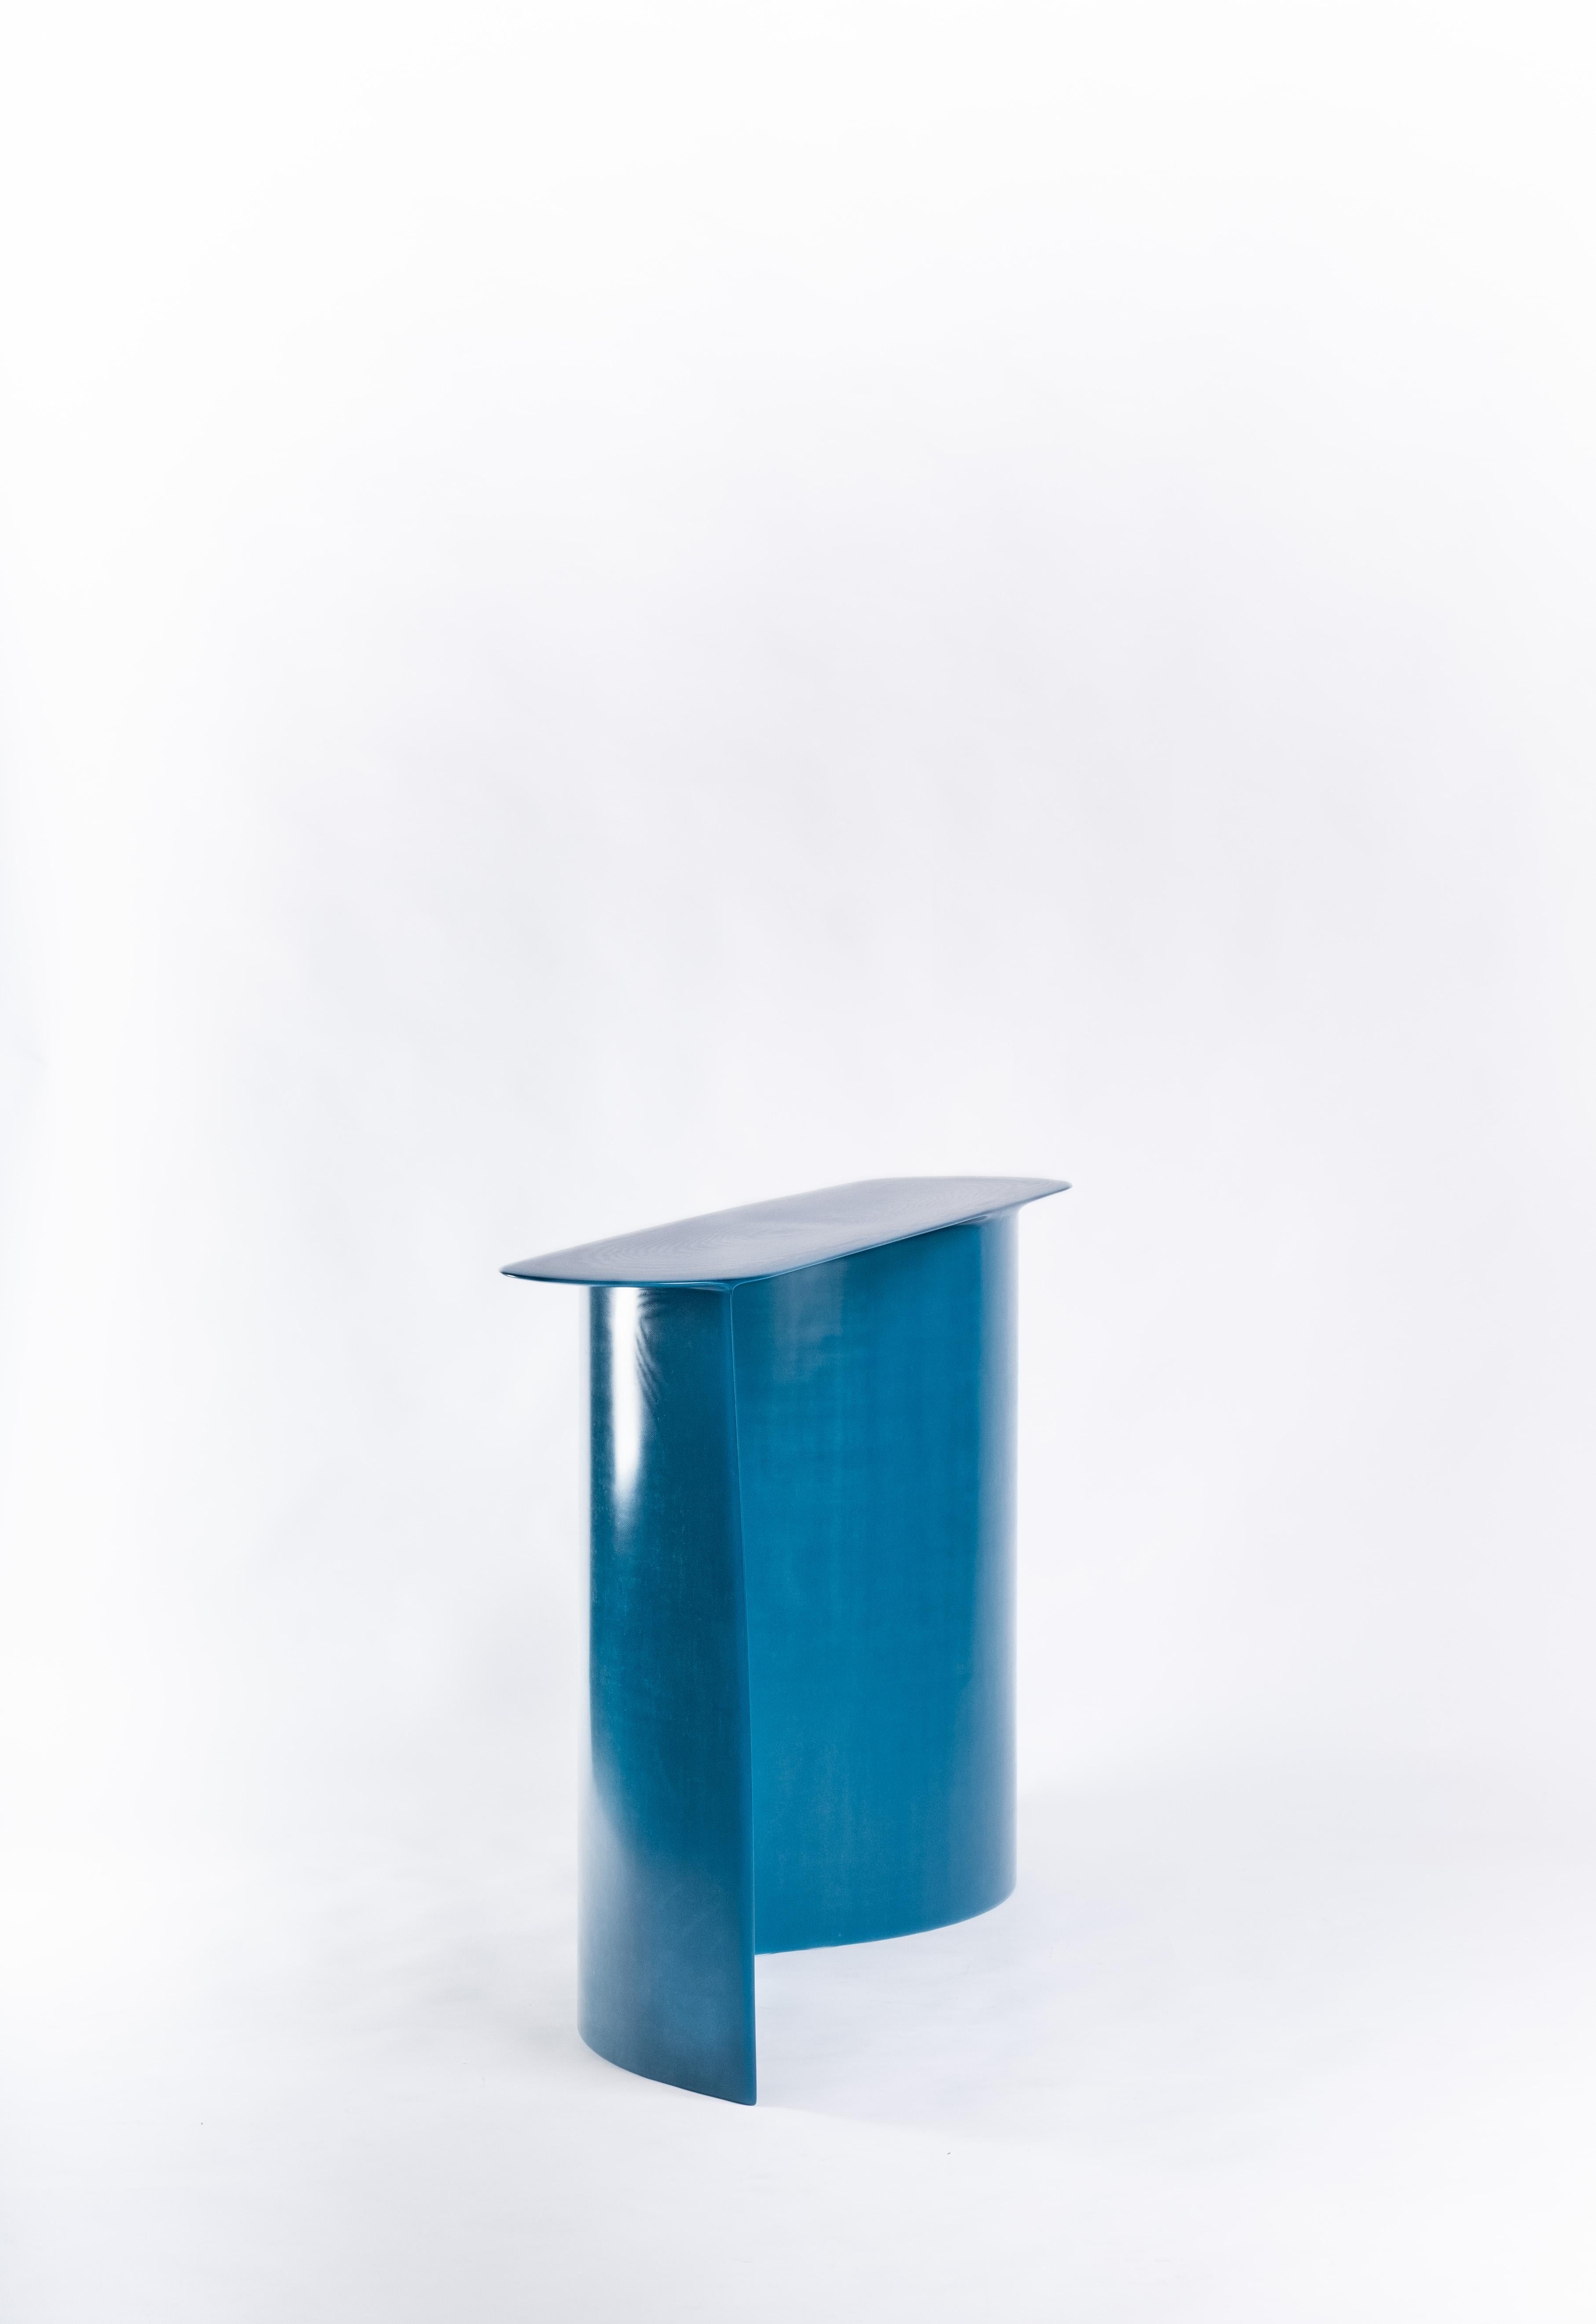 Dutch Contemporary Blue Fiberglass, New Wave Console, by Lukas Cober